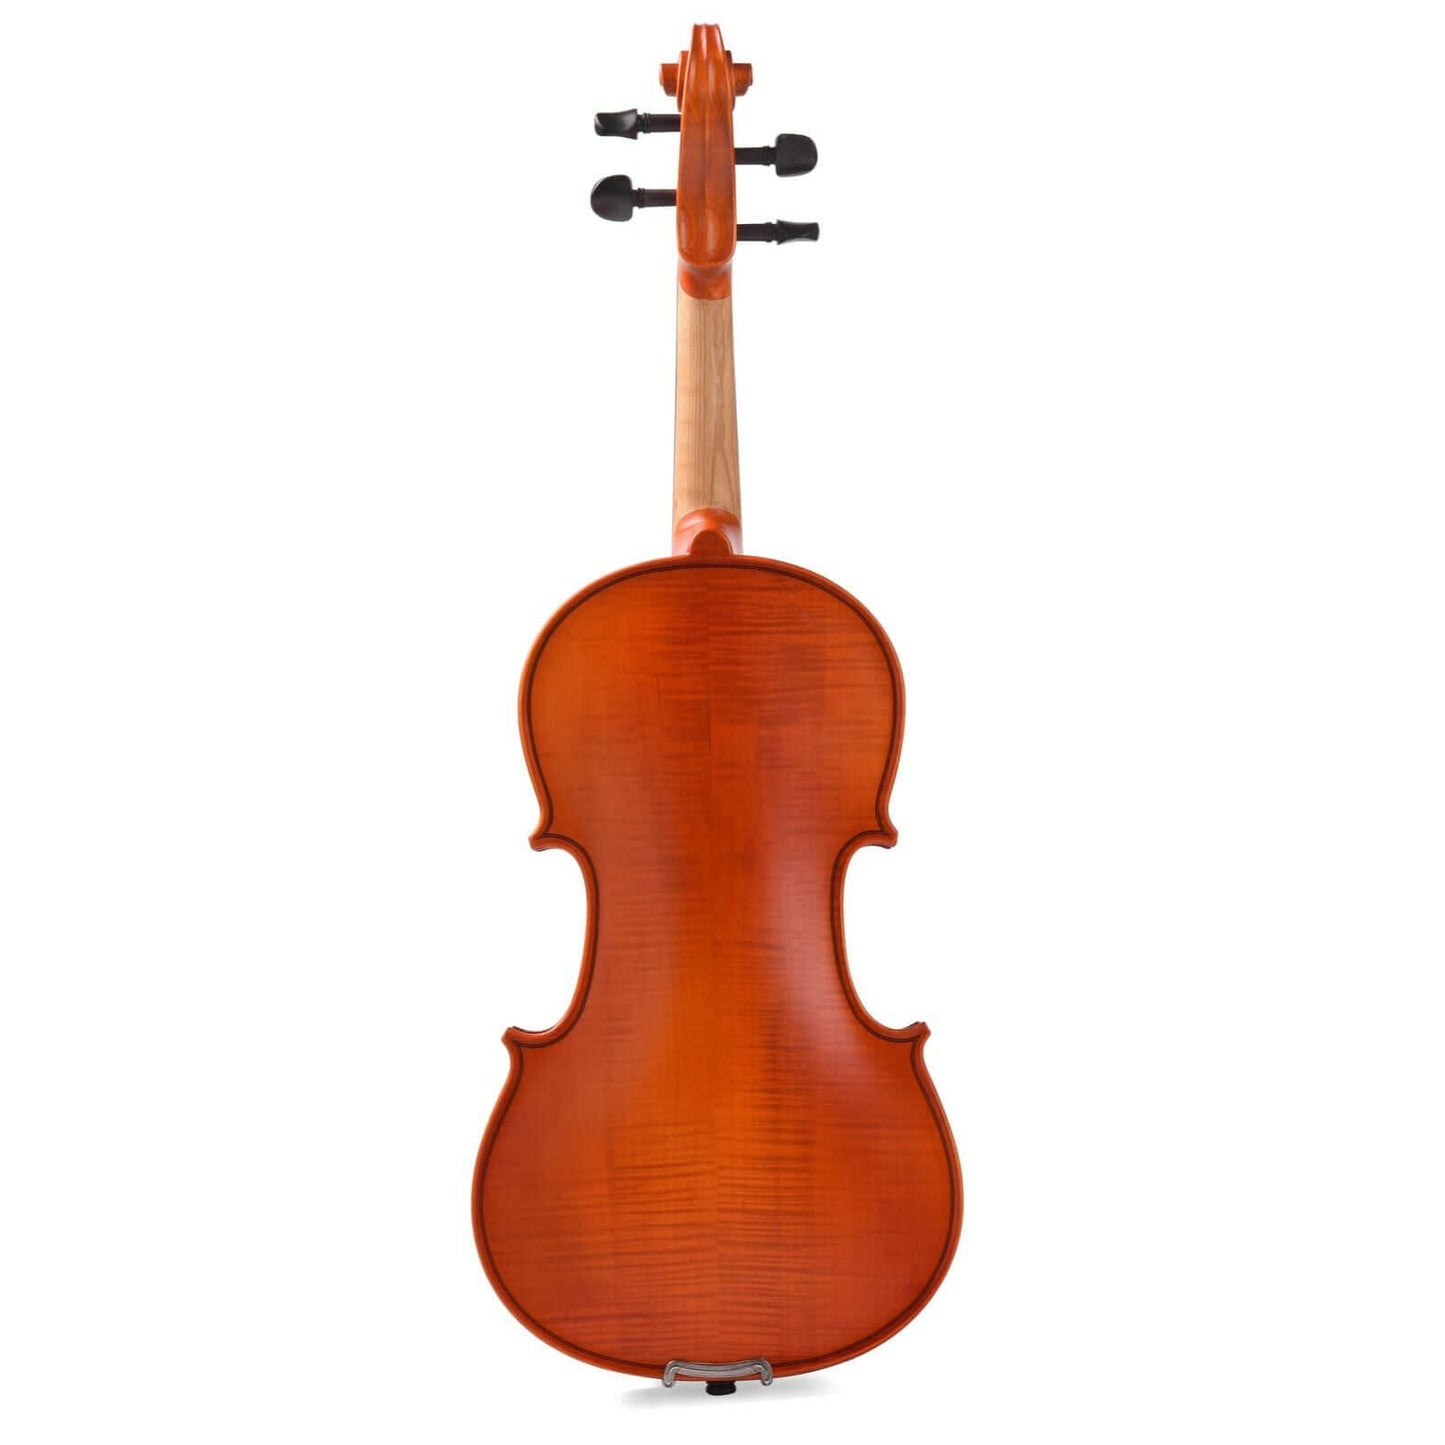 Axiom Concerto Series Violin Outfit - 1/2 Size School Violin